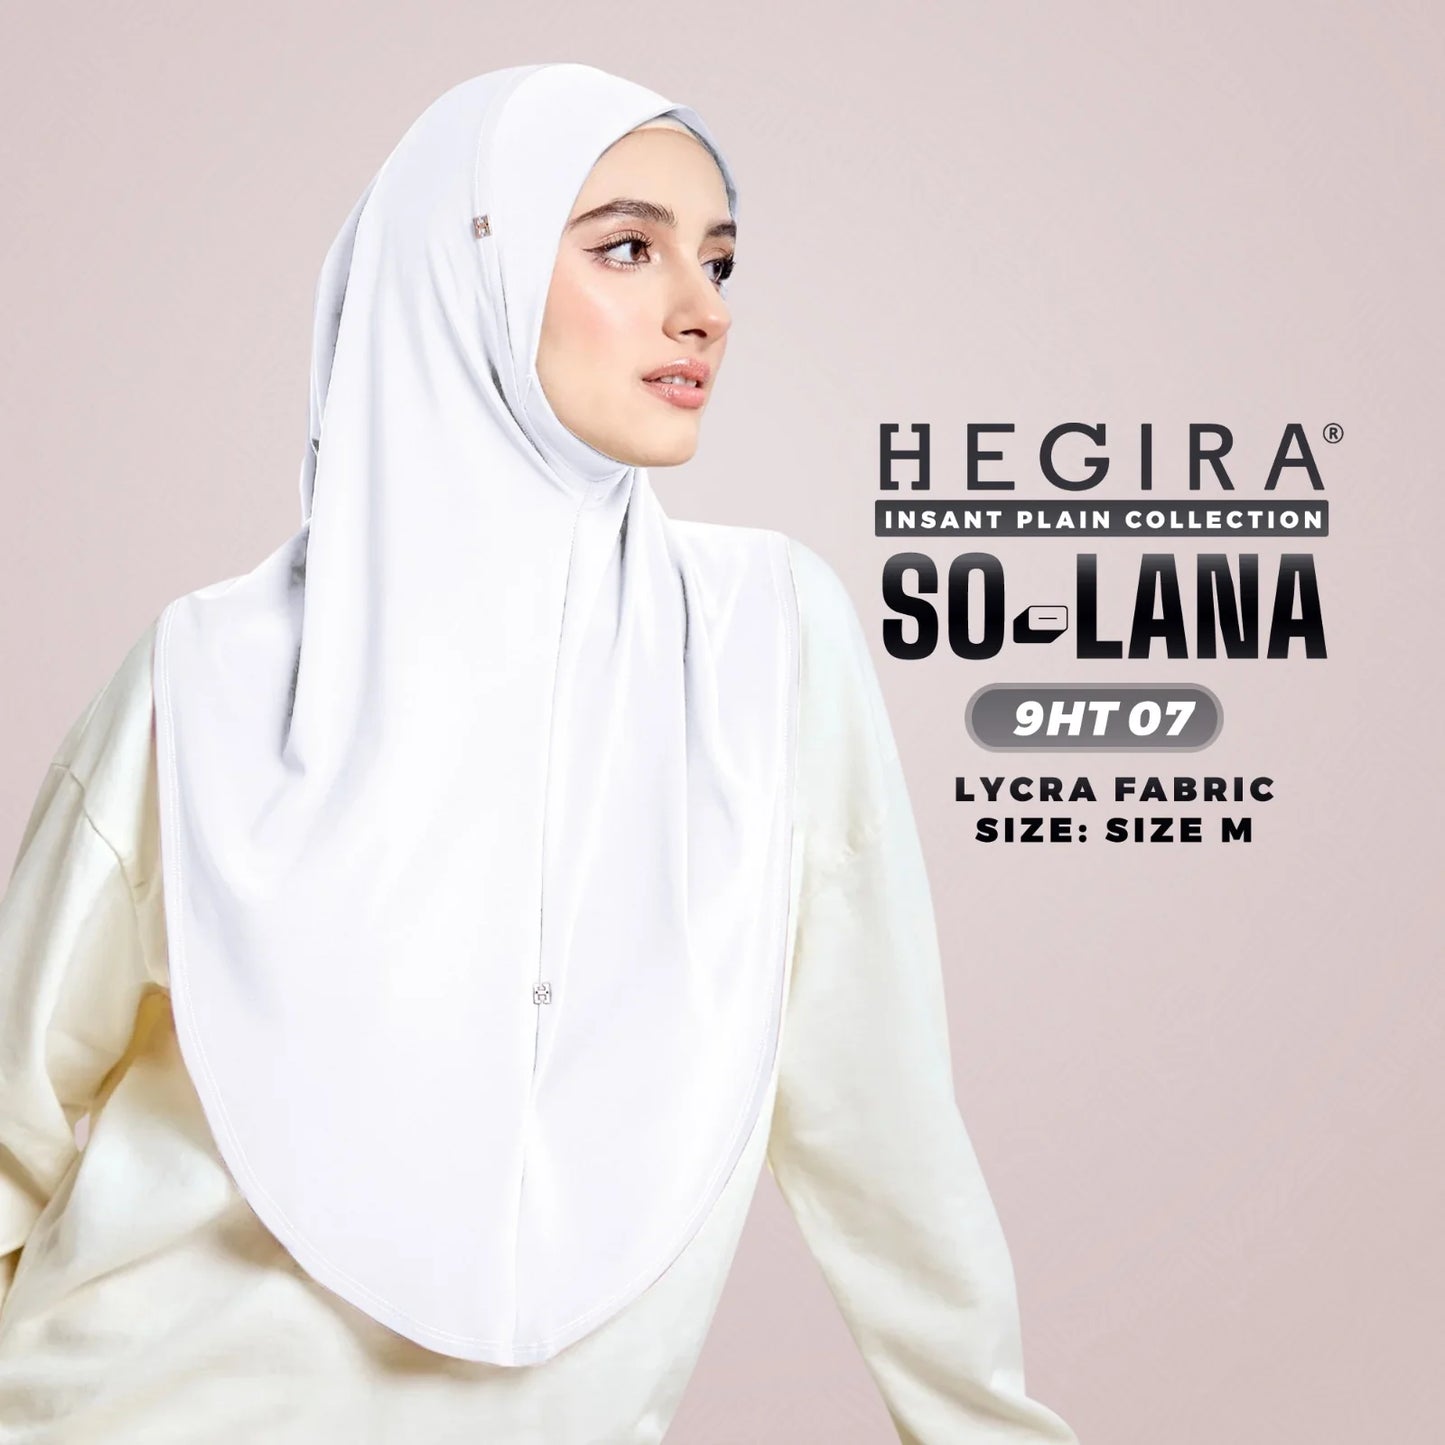 So-Lana Instant Hijab